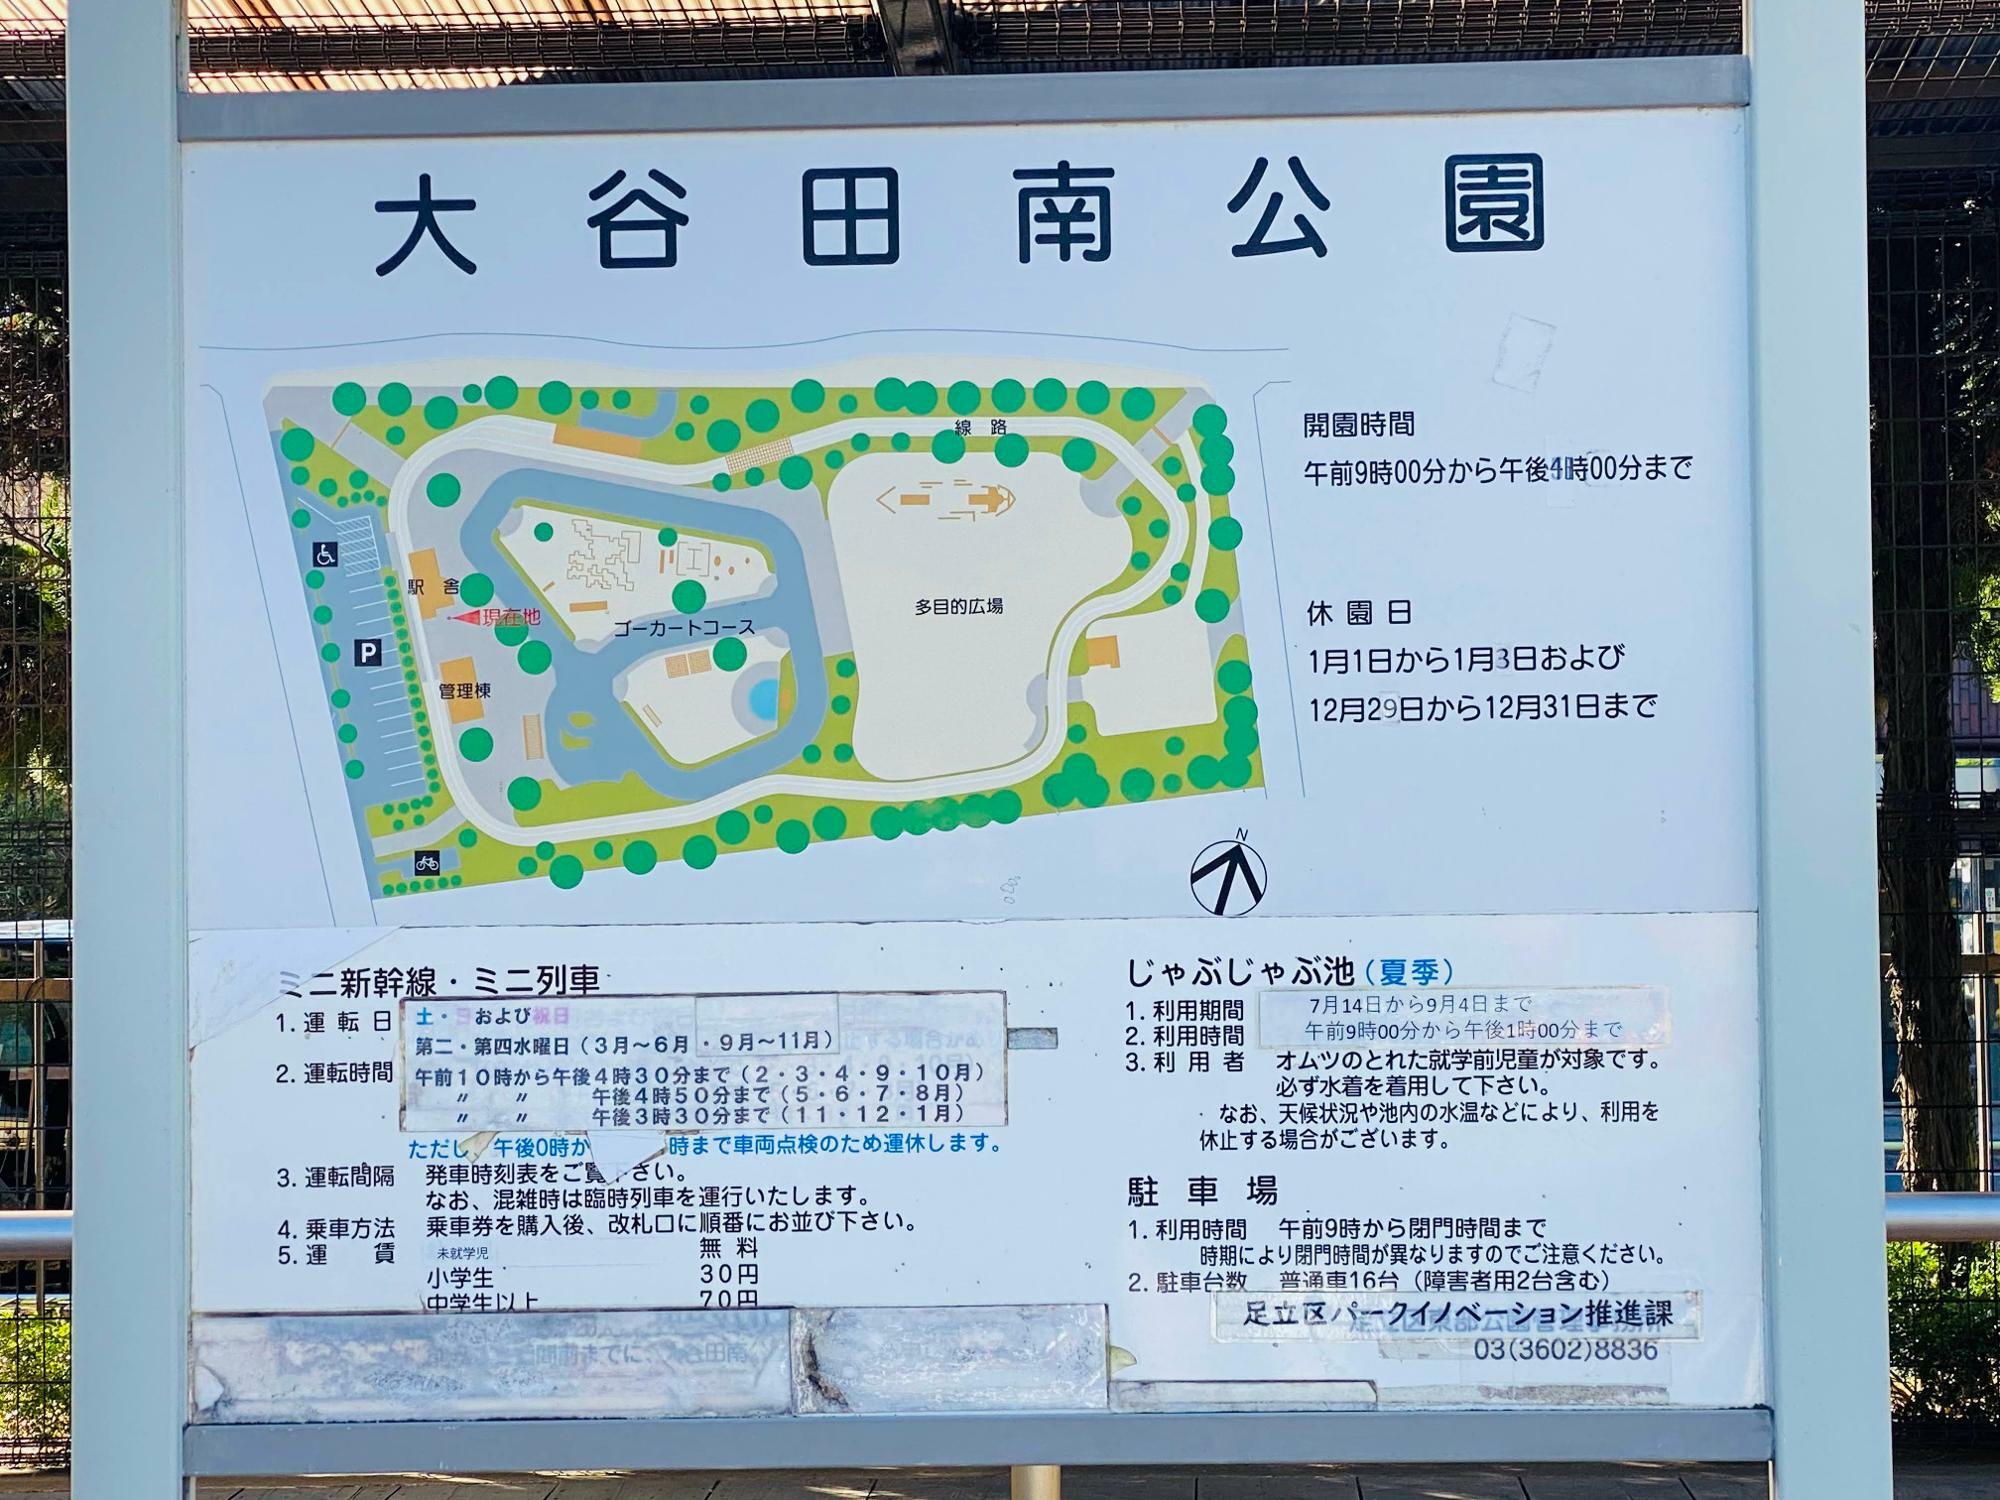 園内マップ